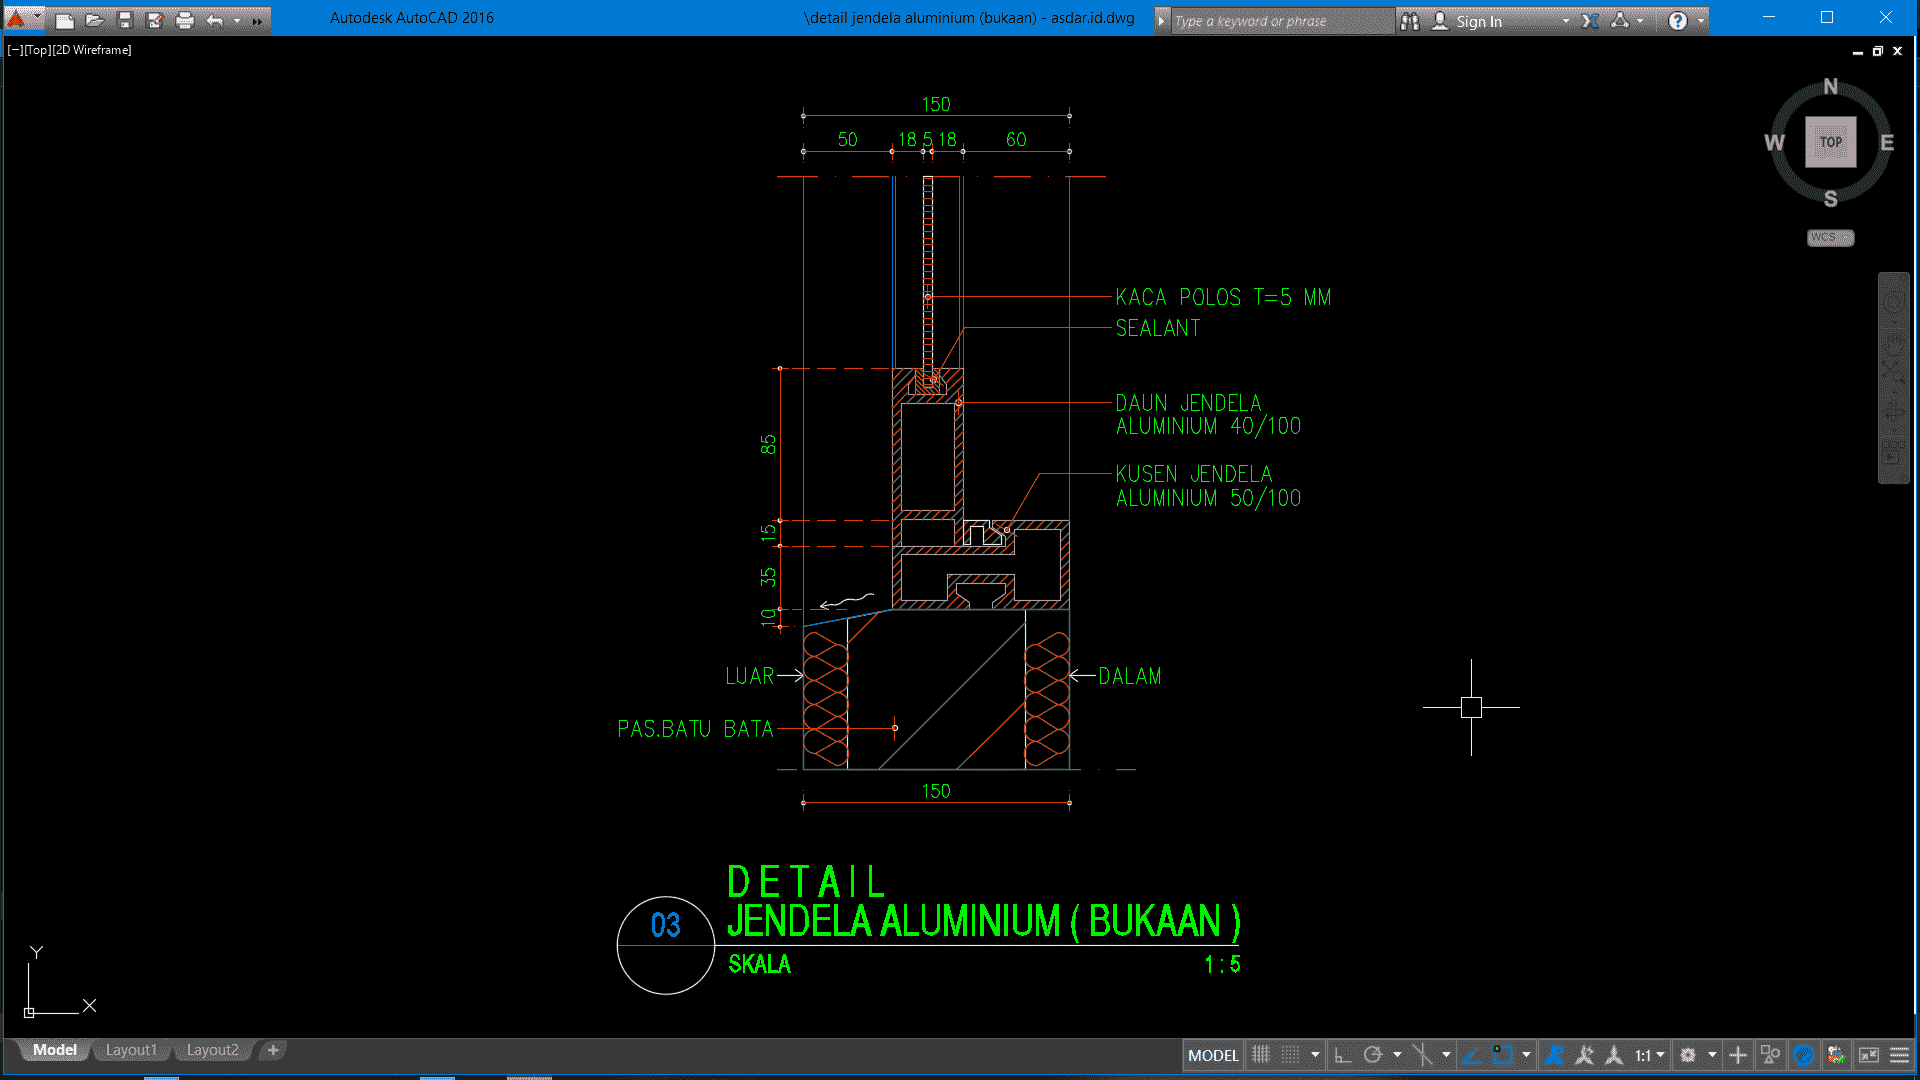 Download Detail  Jendela  Aluminium  Bukaan Format DWG  